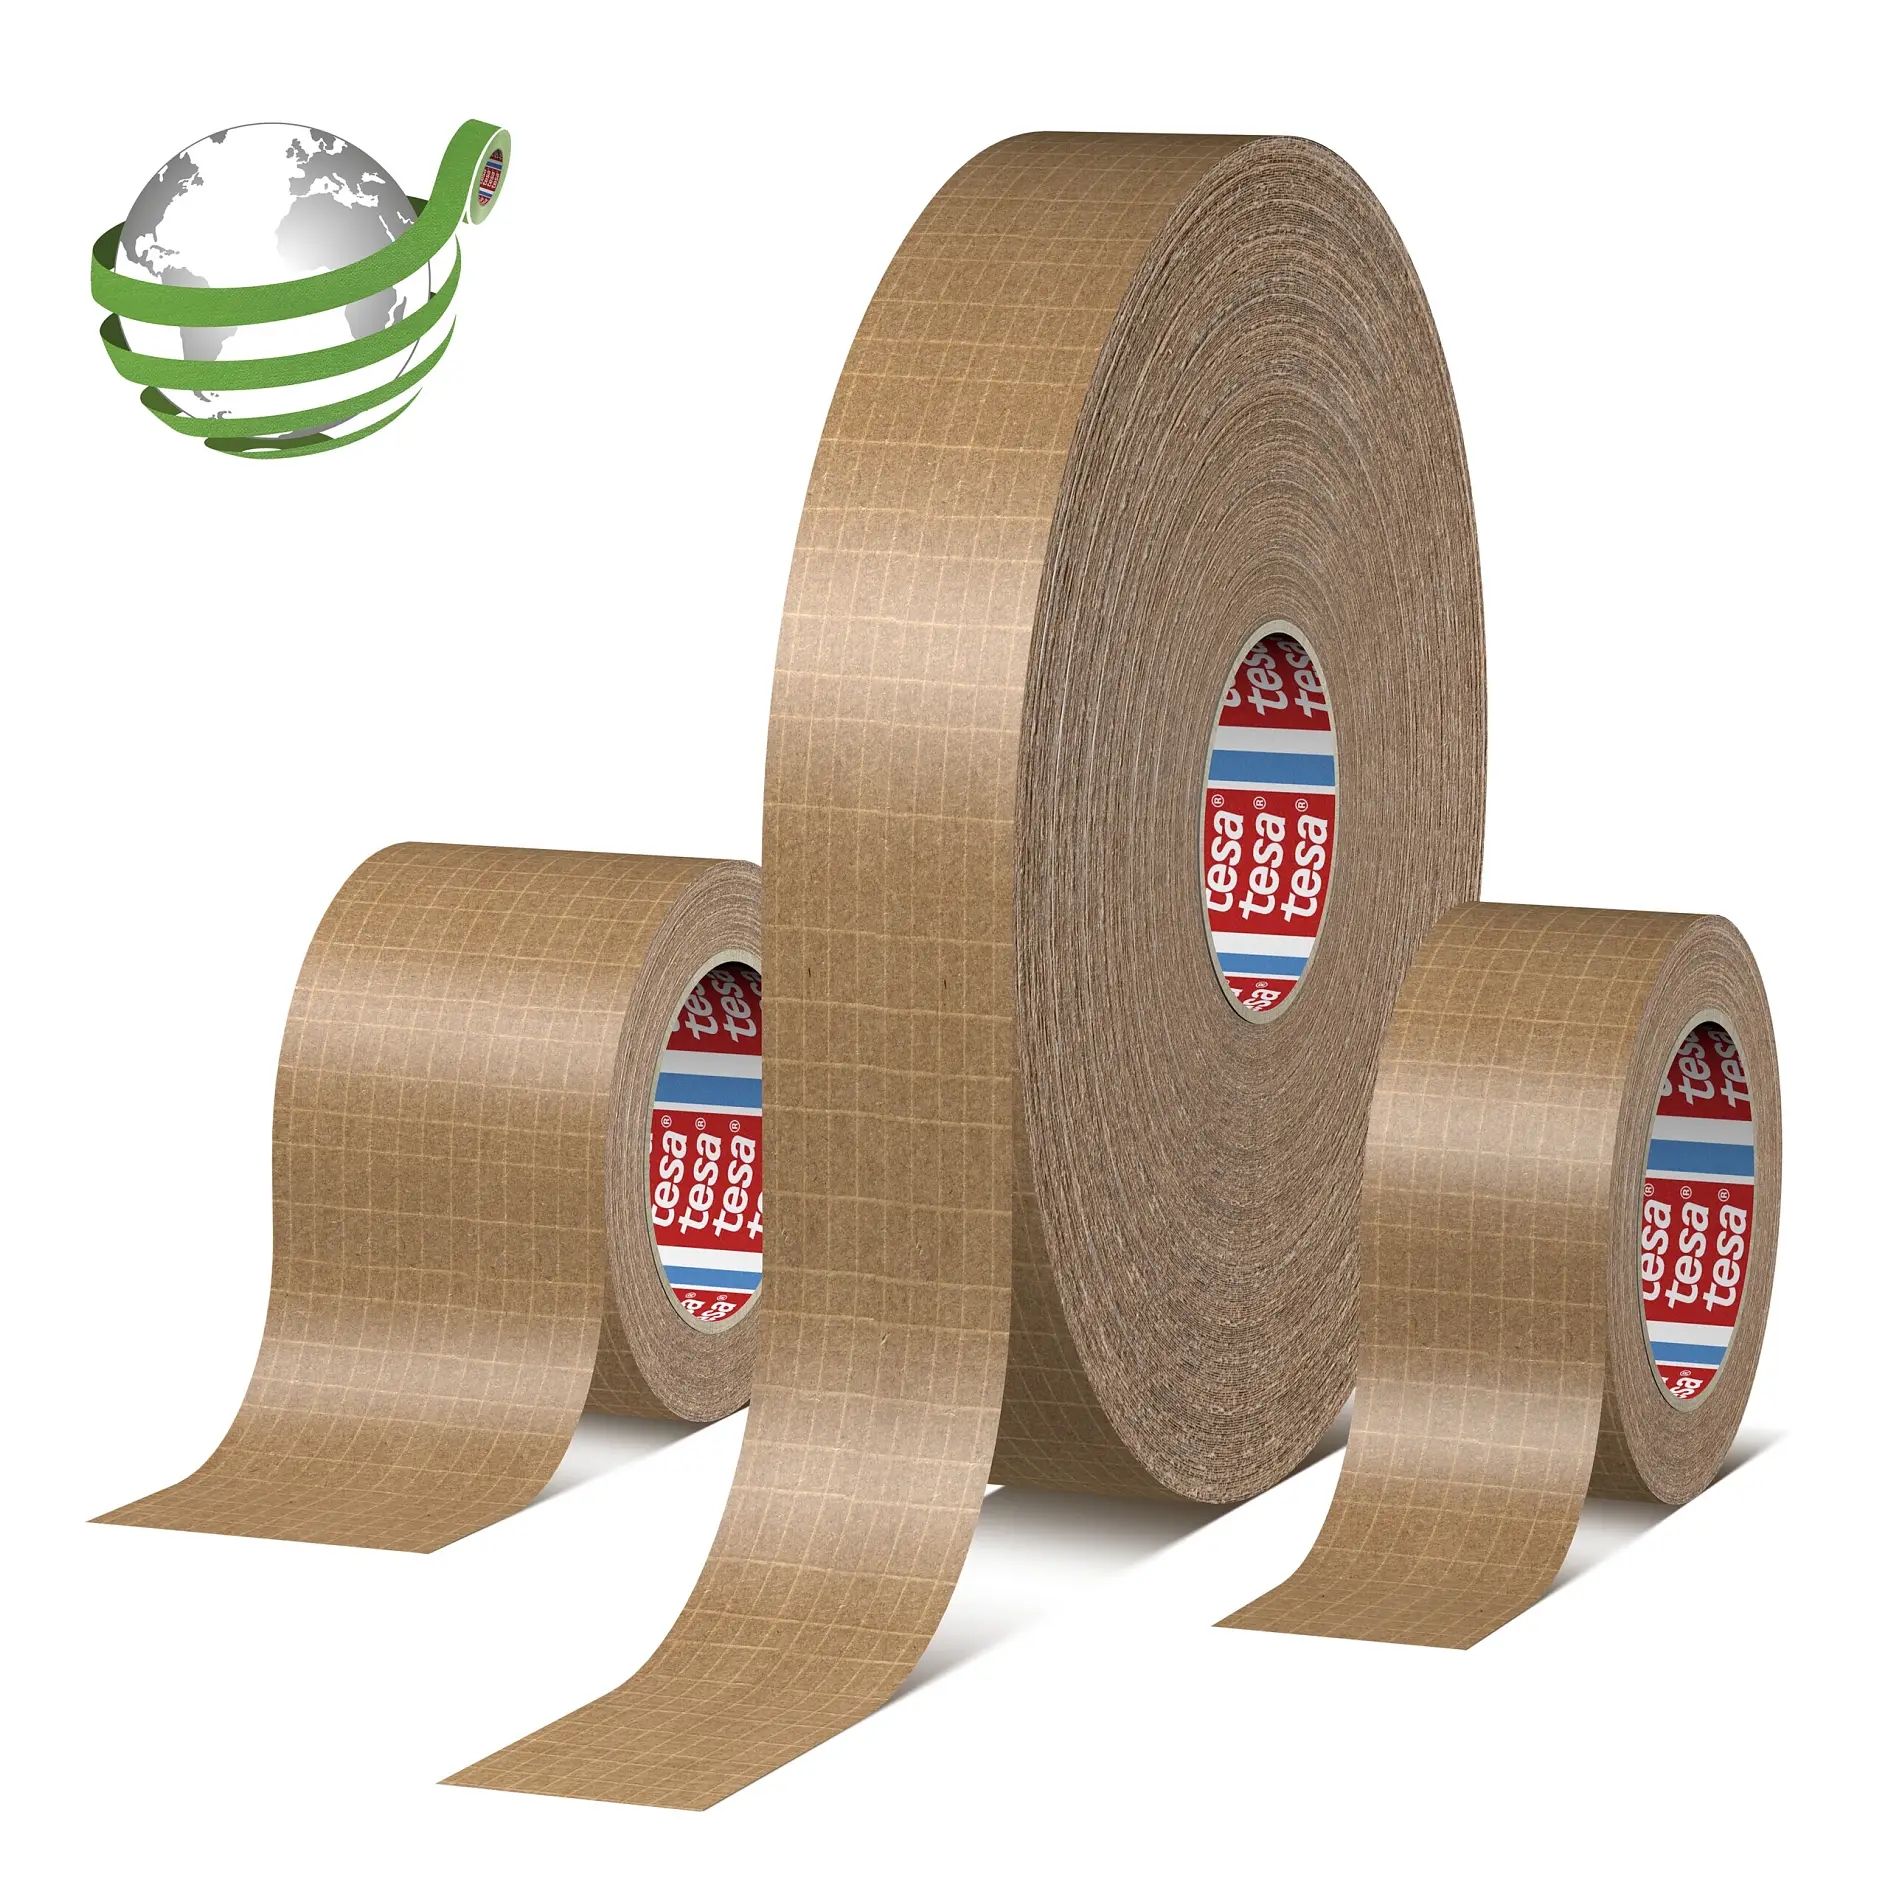 tesa-60013-self-adhesive-reinforced-paper-packaging-tape-01-ap_top